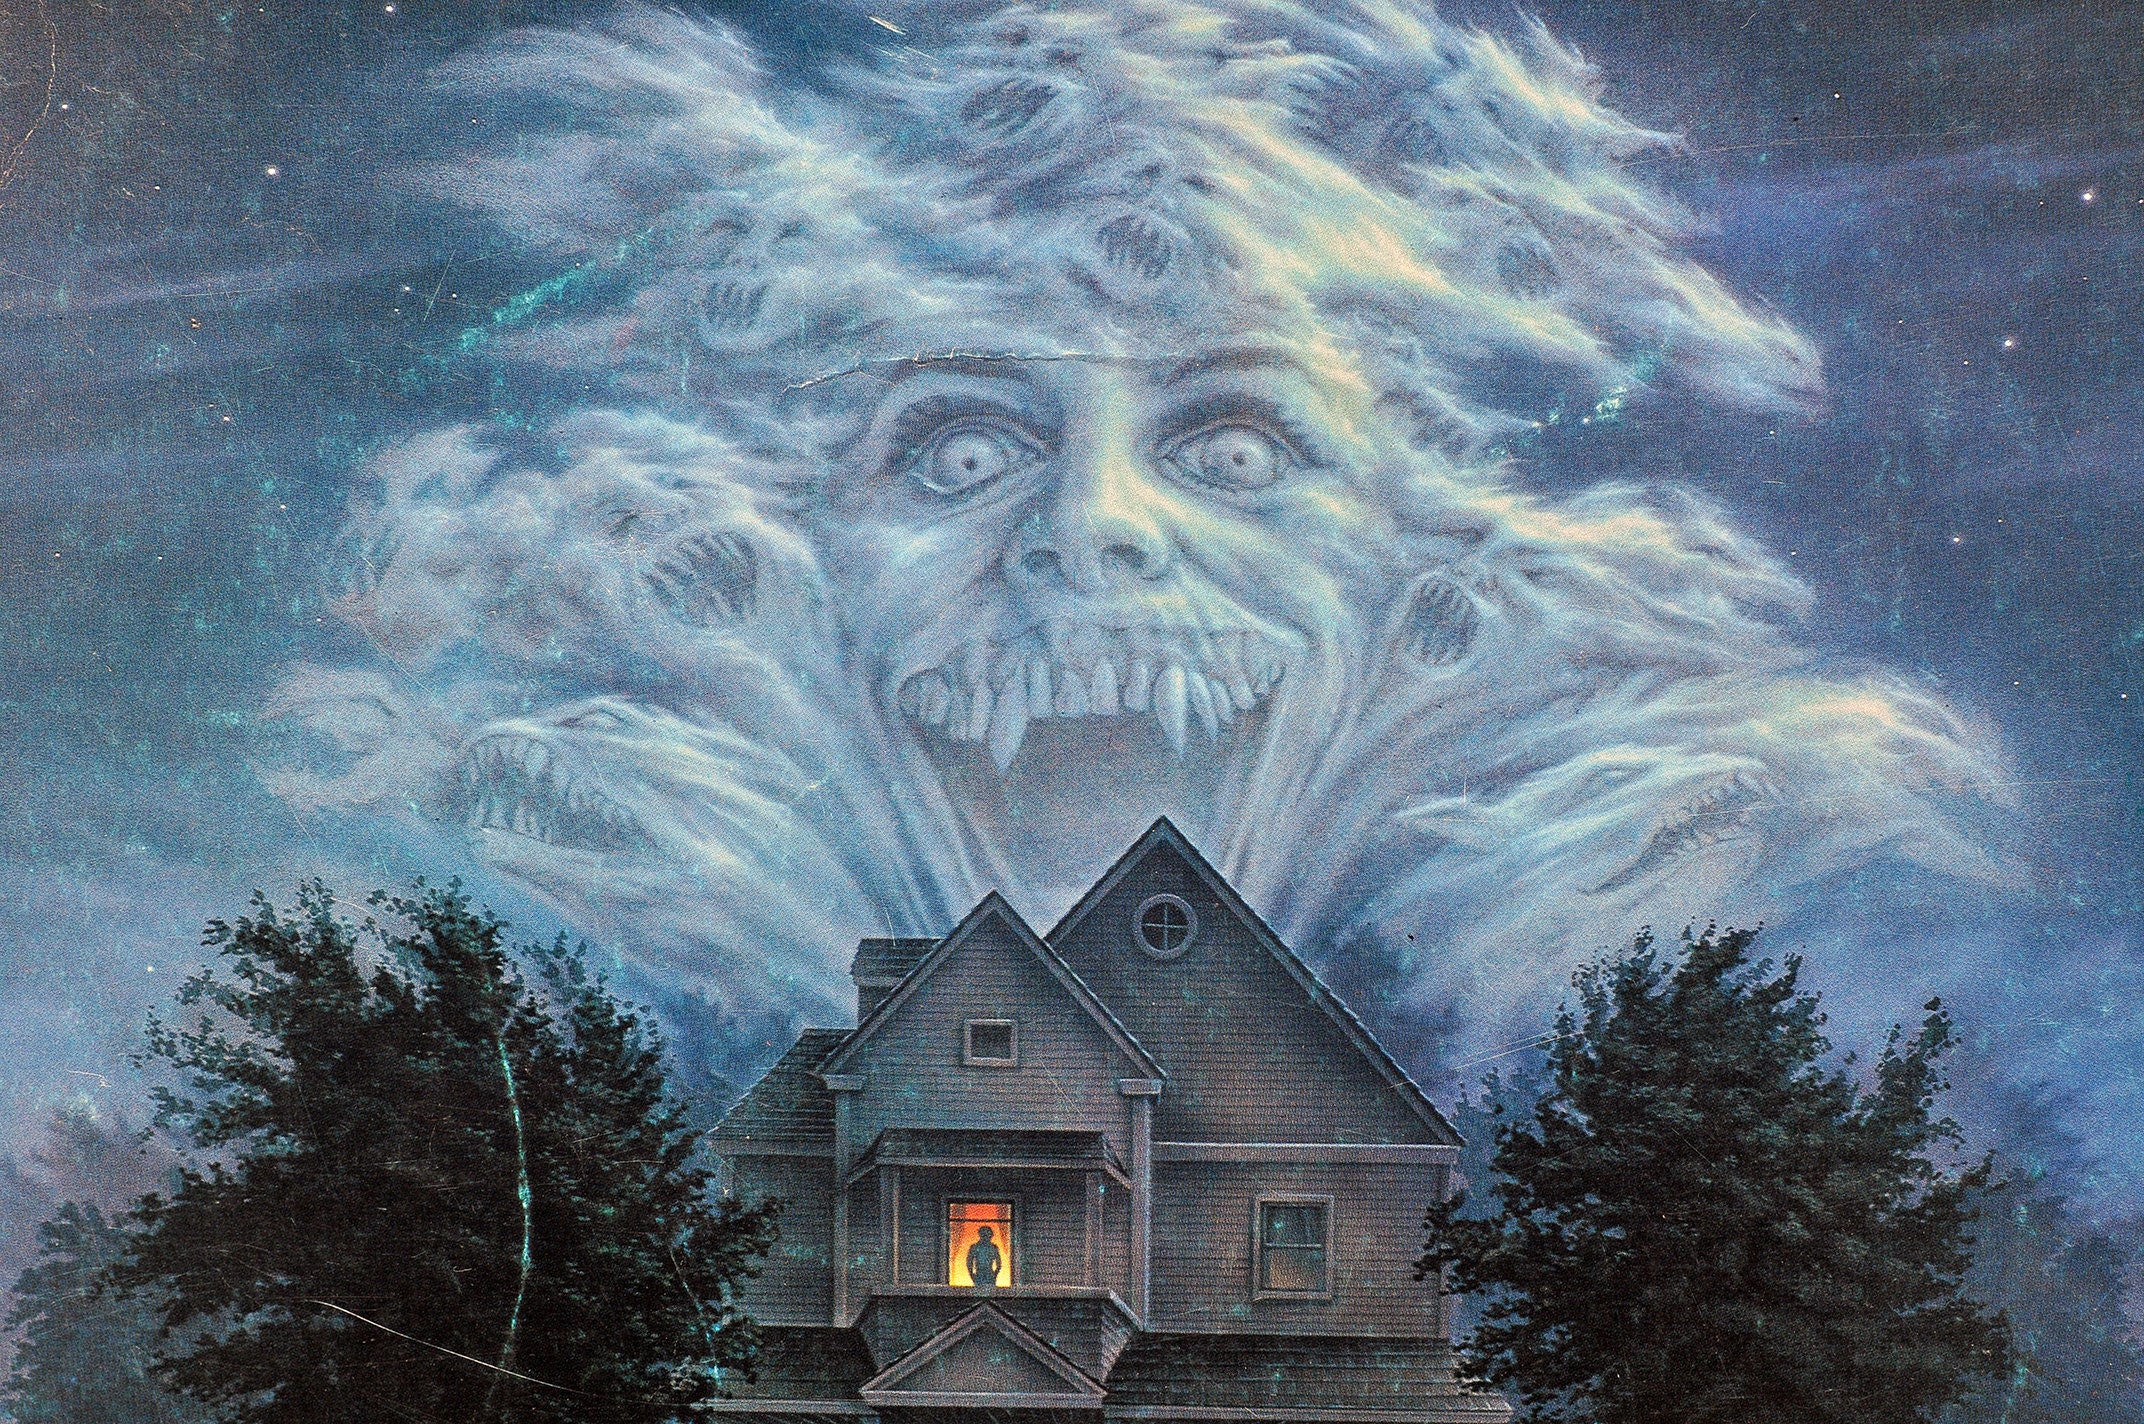 Fright Night rare original 1985 cult horror movie poster poster director Tom Holland